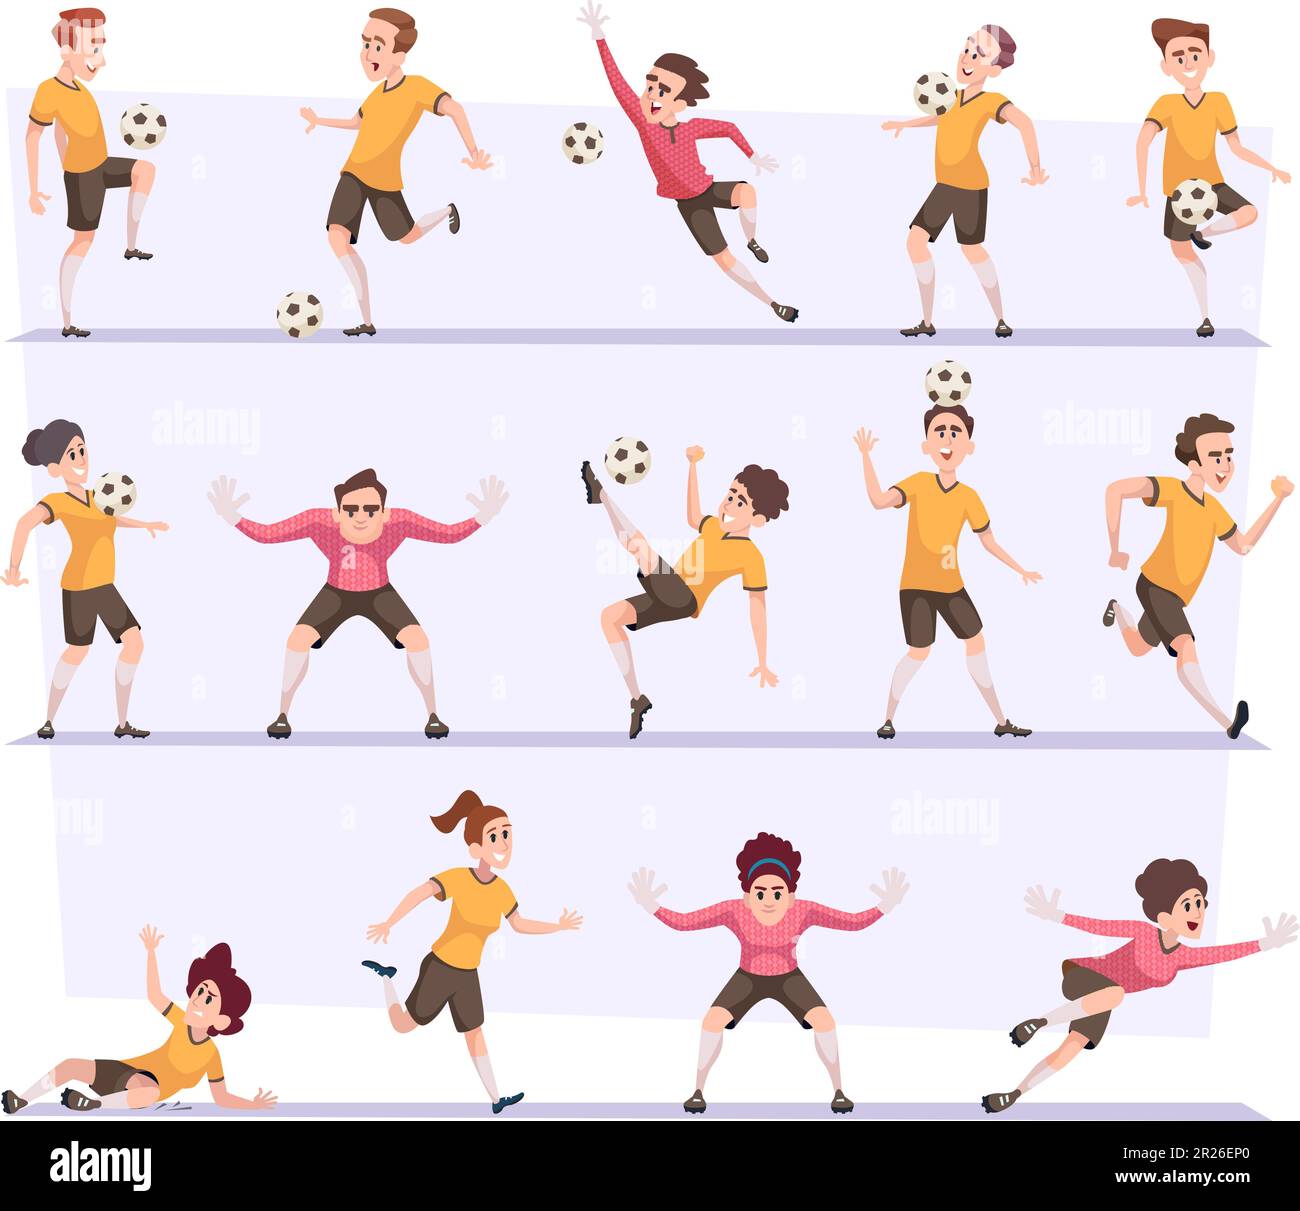 Joueurs de football. Les personnages masculins et féminins de football en action posent avec des illustrations vectorielles exactes de balle Illustration de Vecteur